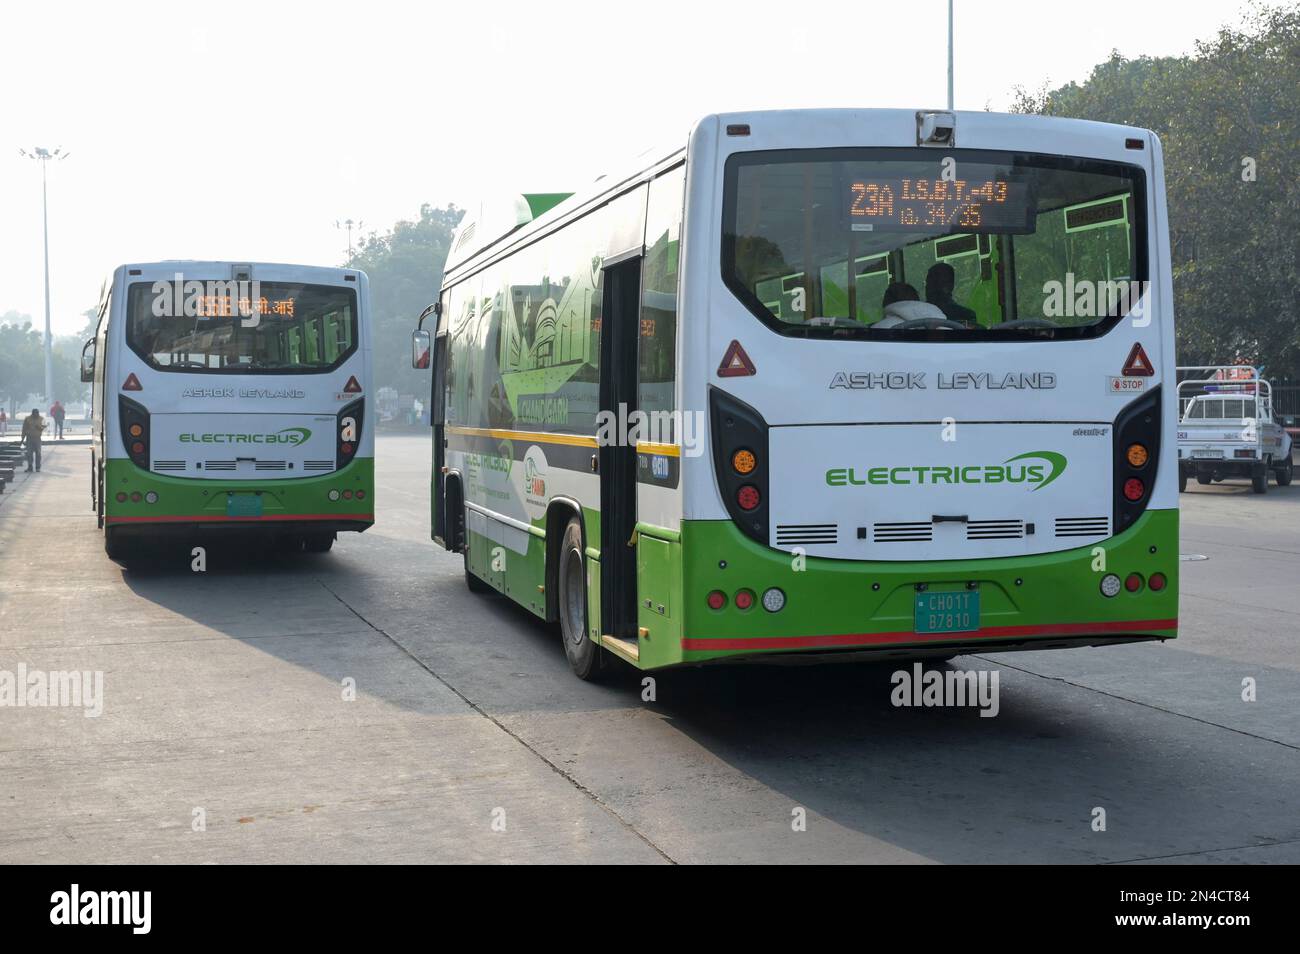 INDIEN, Chandigarh, Sektor 17, lokaler Busbahnhof, Ashok Leyland Elektrobus für öffentliche Verkehrsmittel Stockfoto